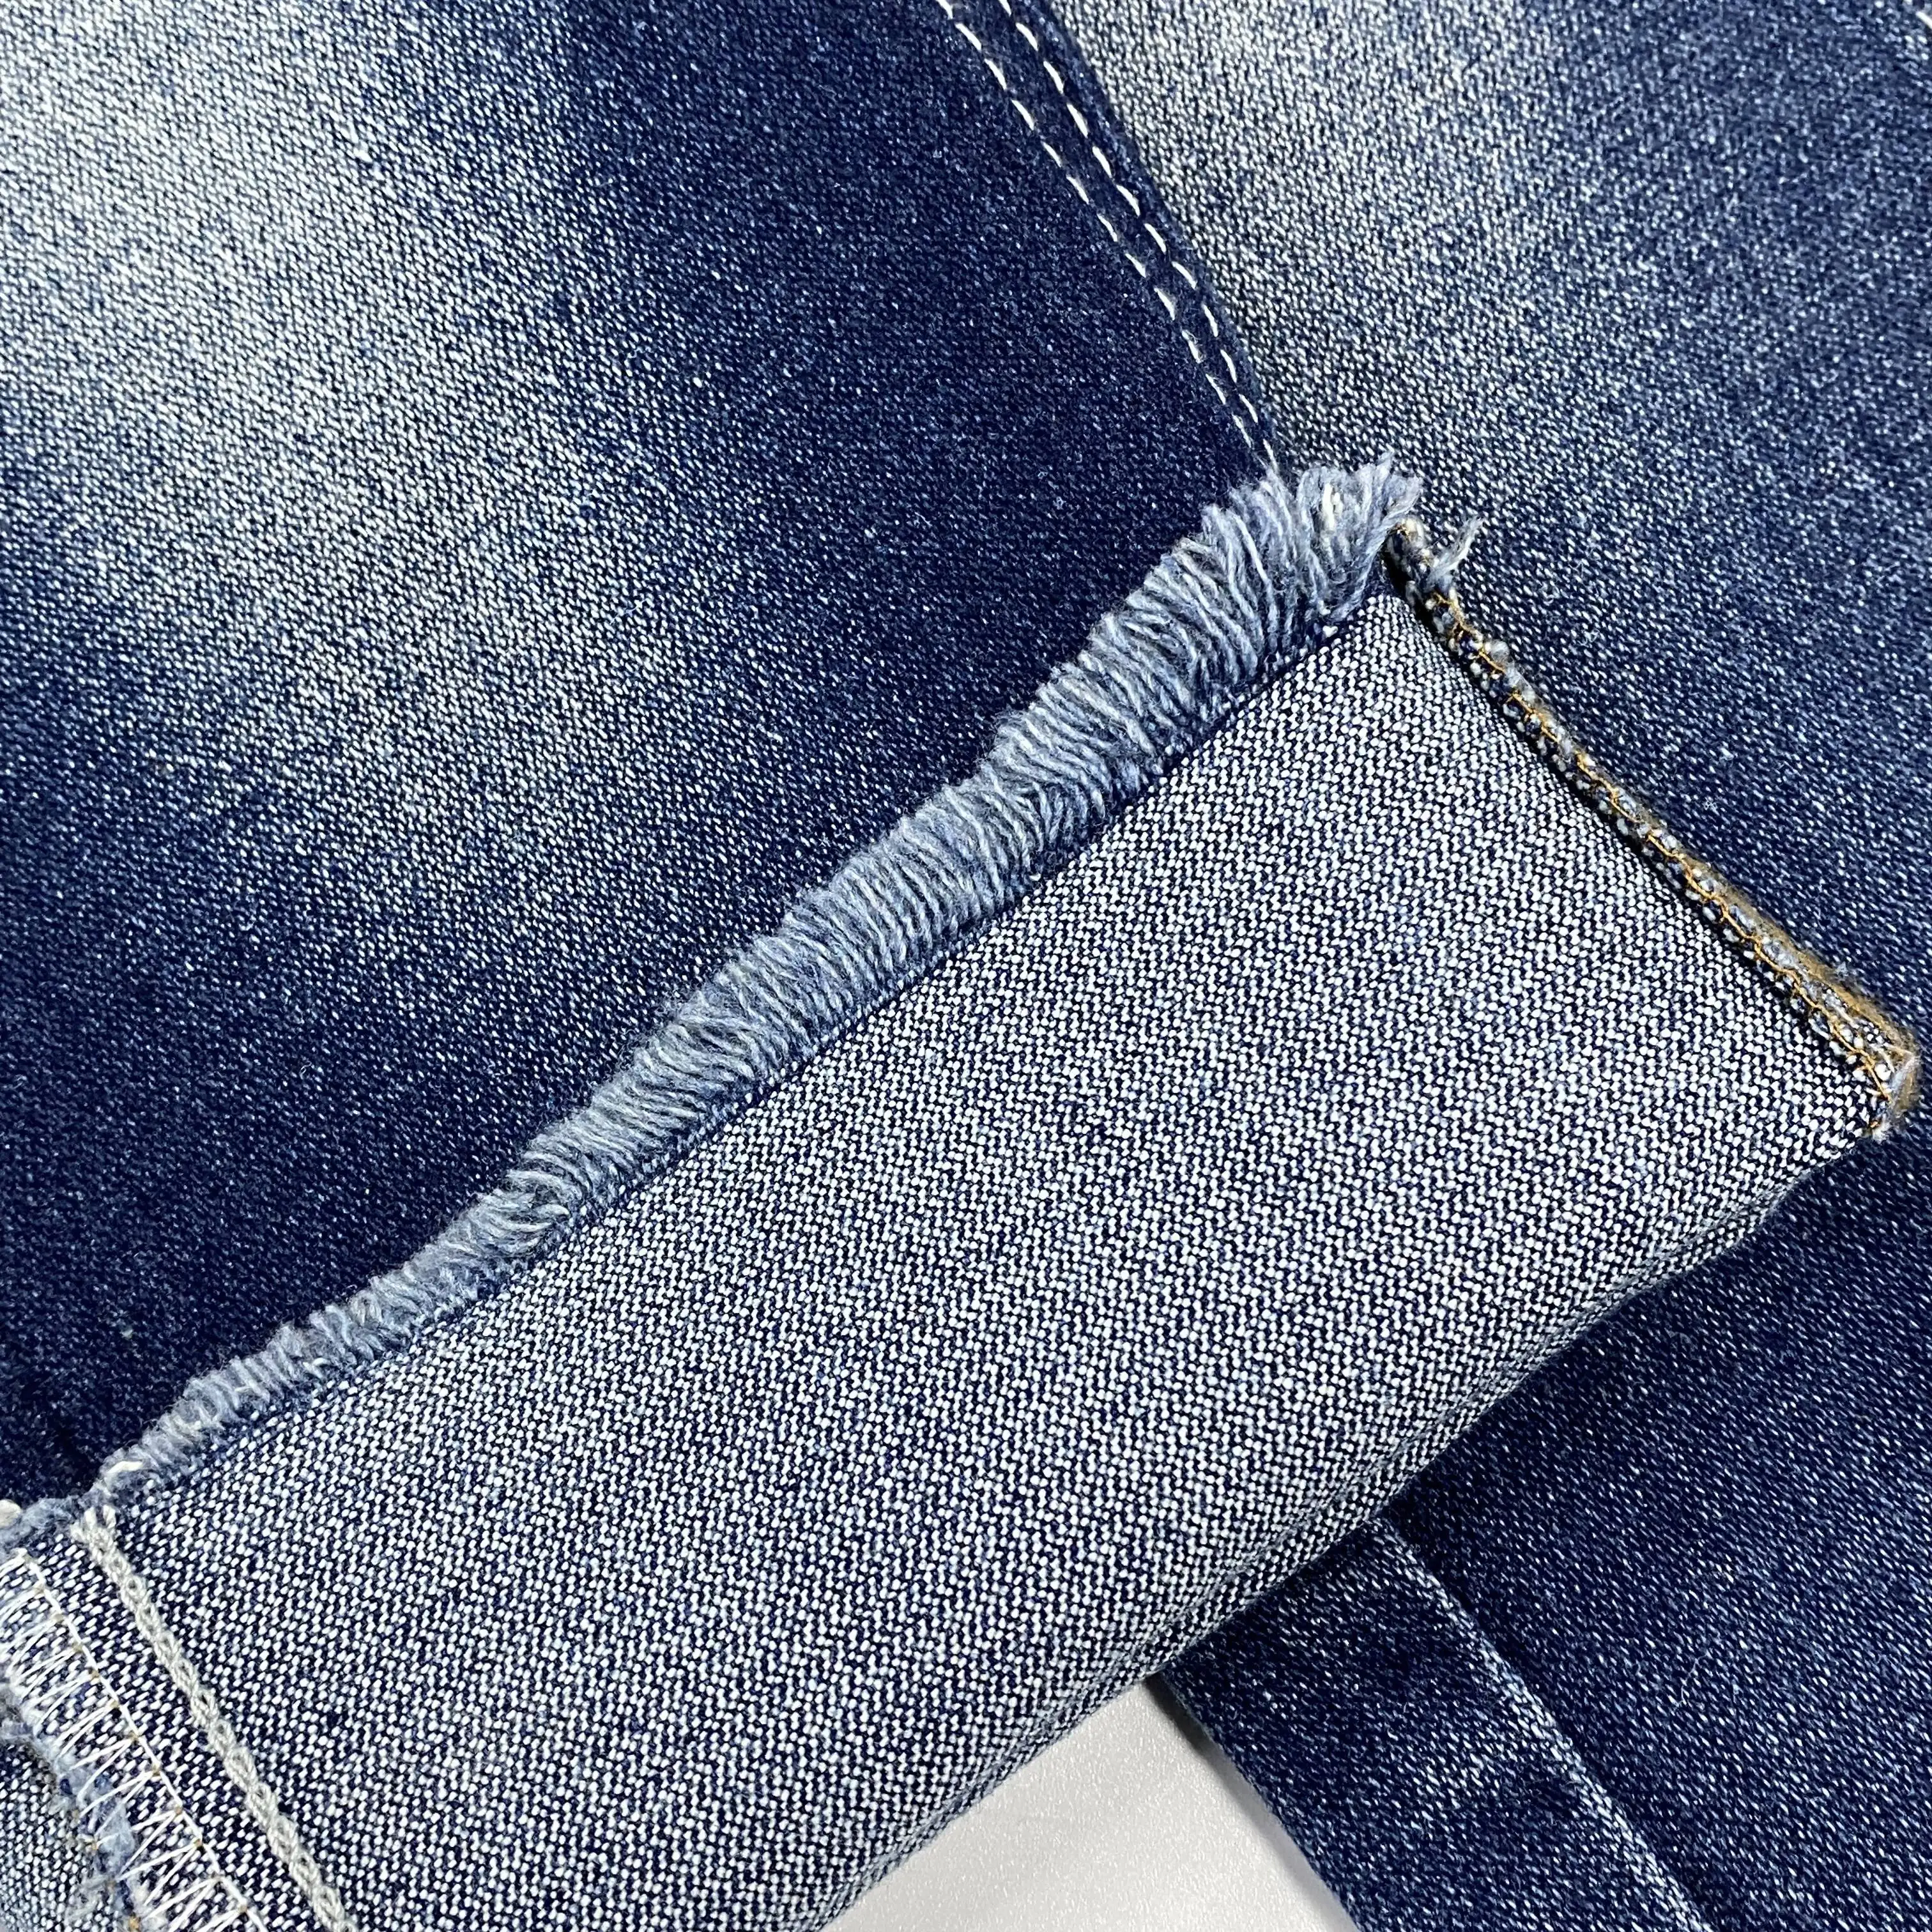 Tecido jeans rígido sem sarja, tecido de algodão de alta qualidade, peso pesado, 14 onças, 474 G/M, 100% qualidade 7*7 OA, azul e preto, com baixo preço de desconto